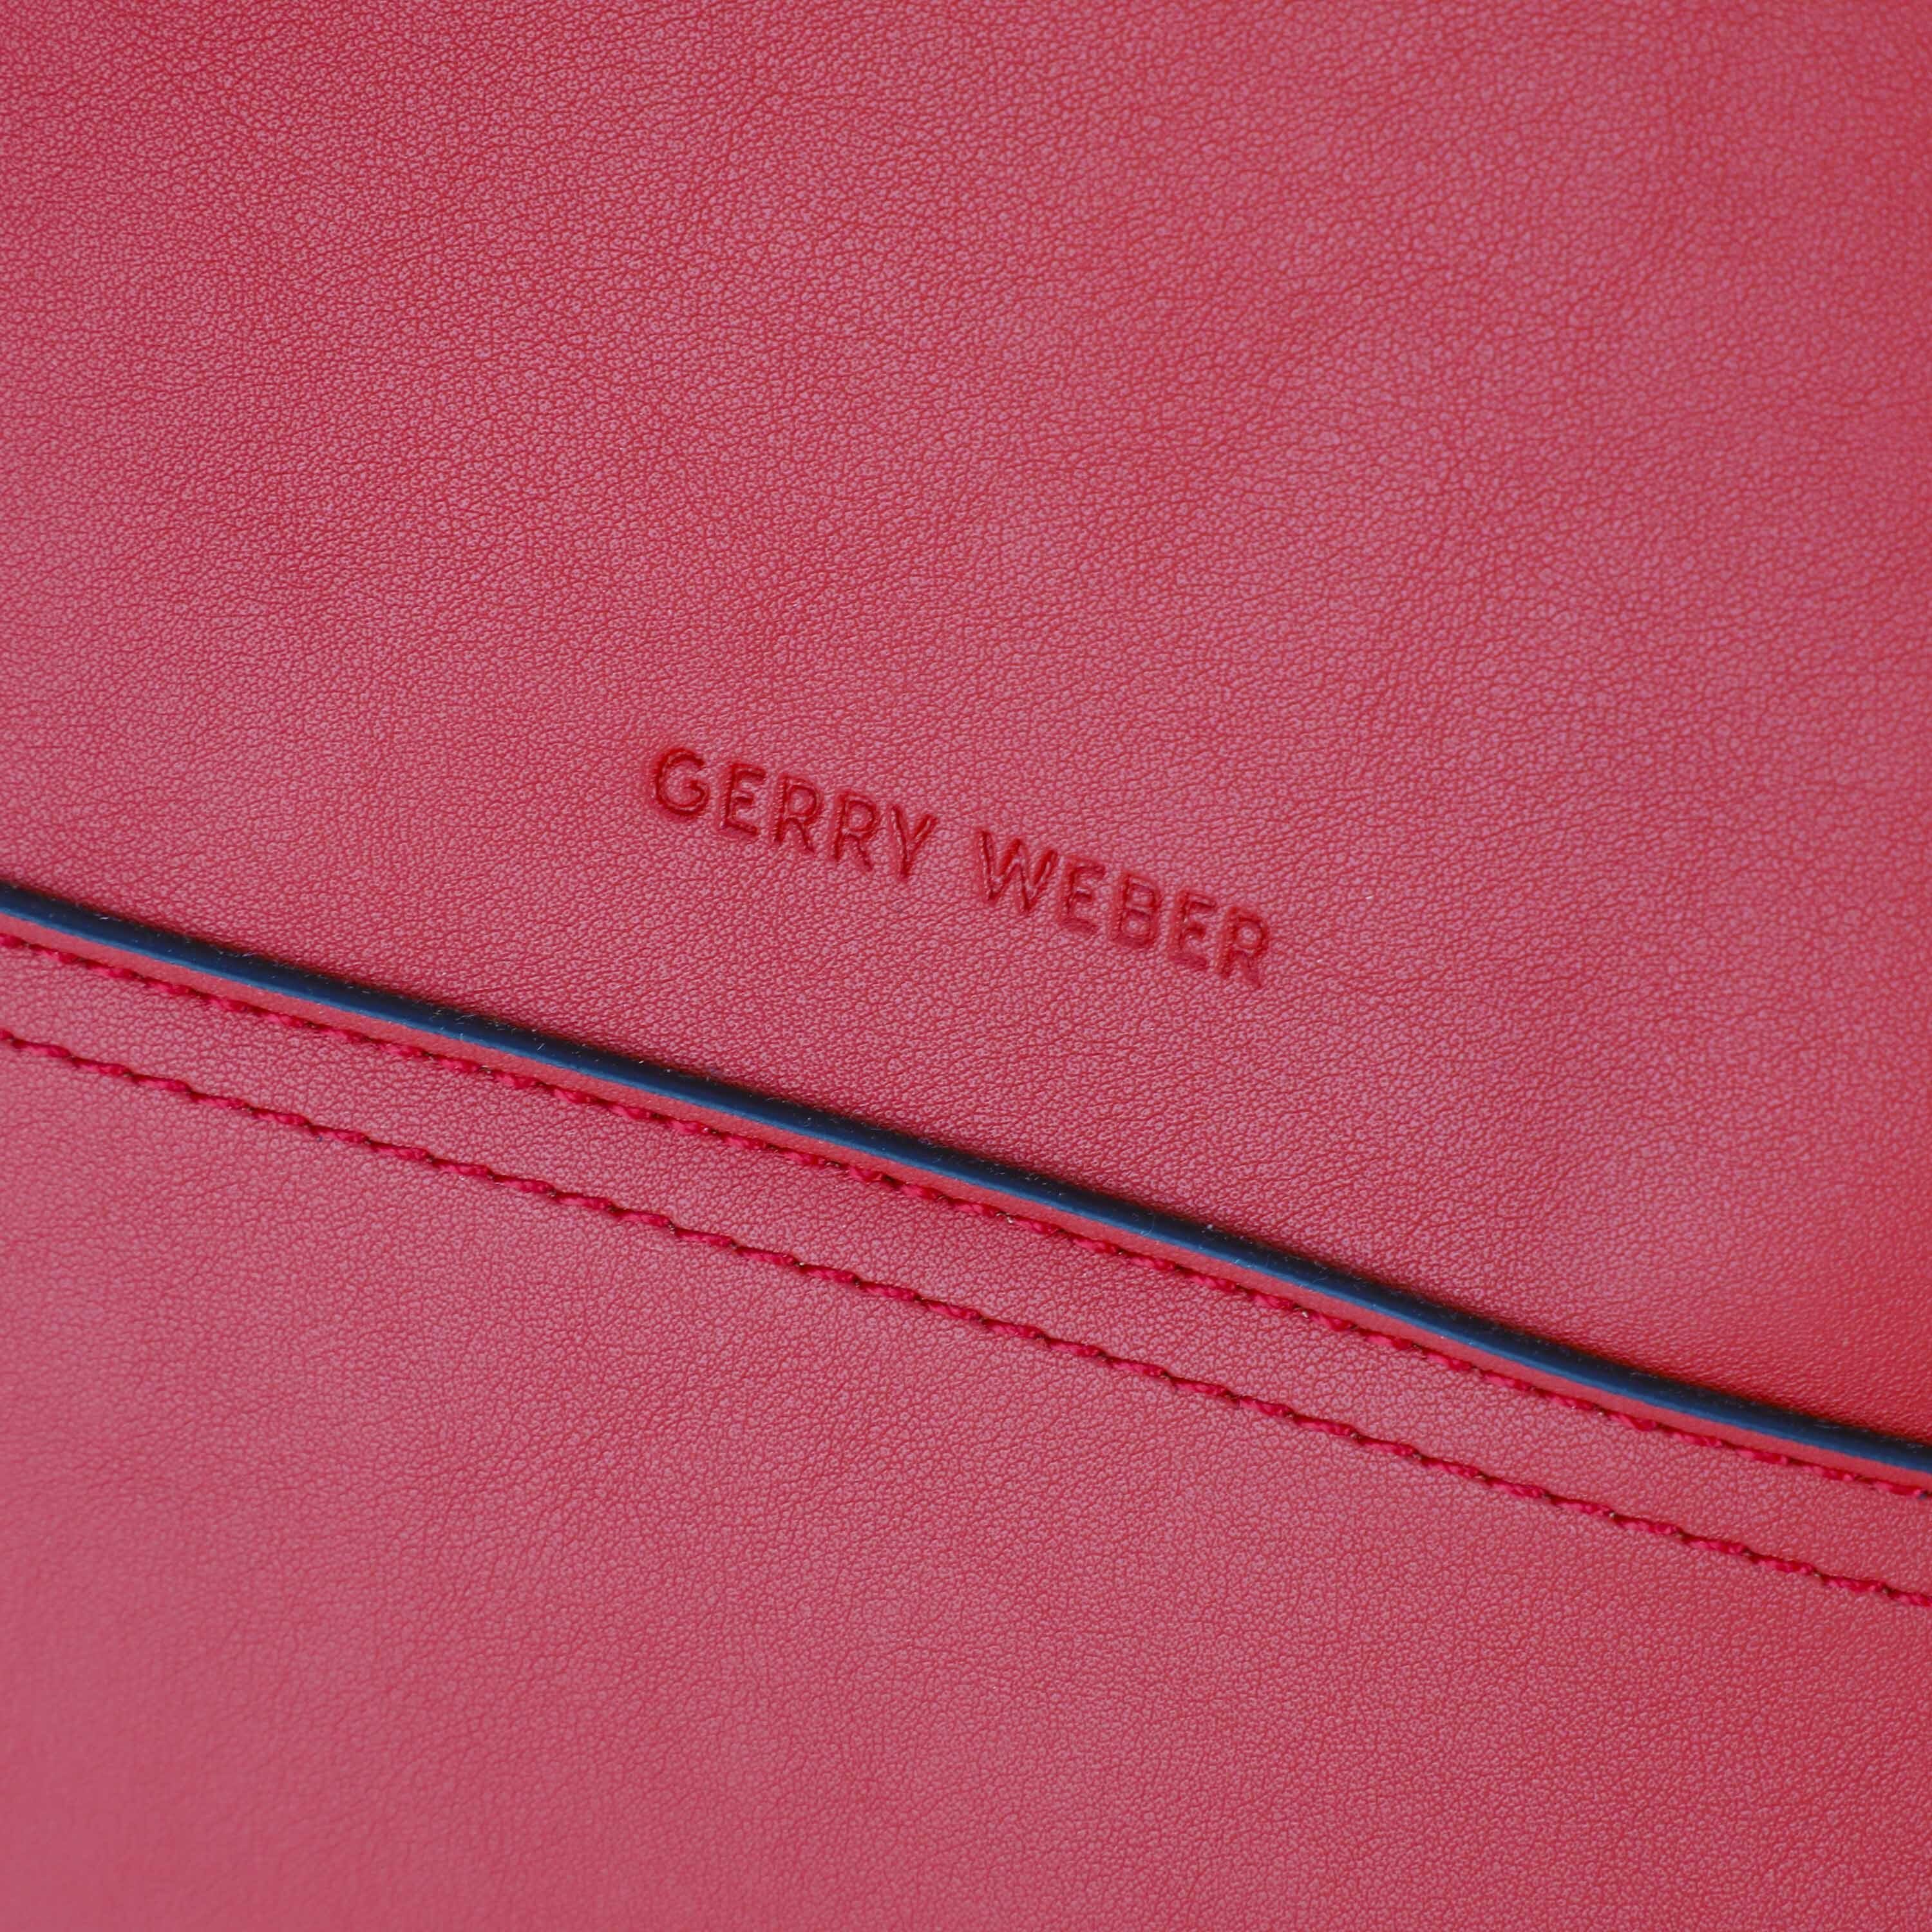 WEBER Handtasche red GERRY